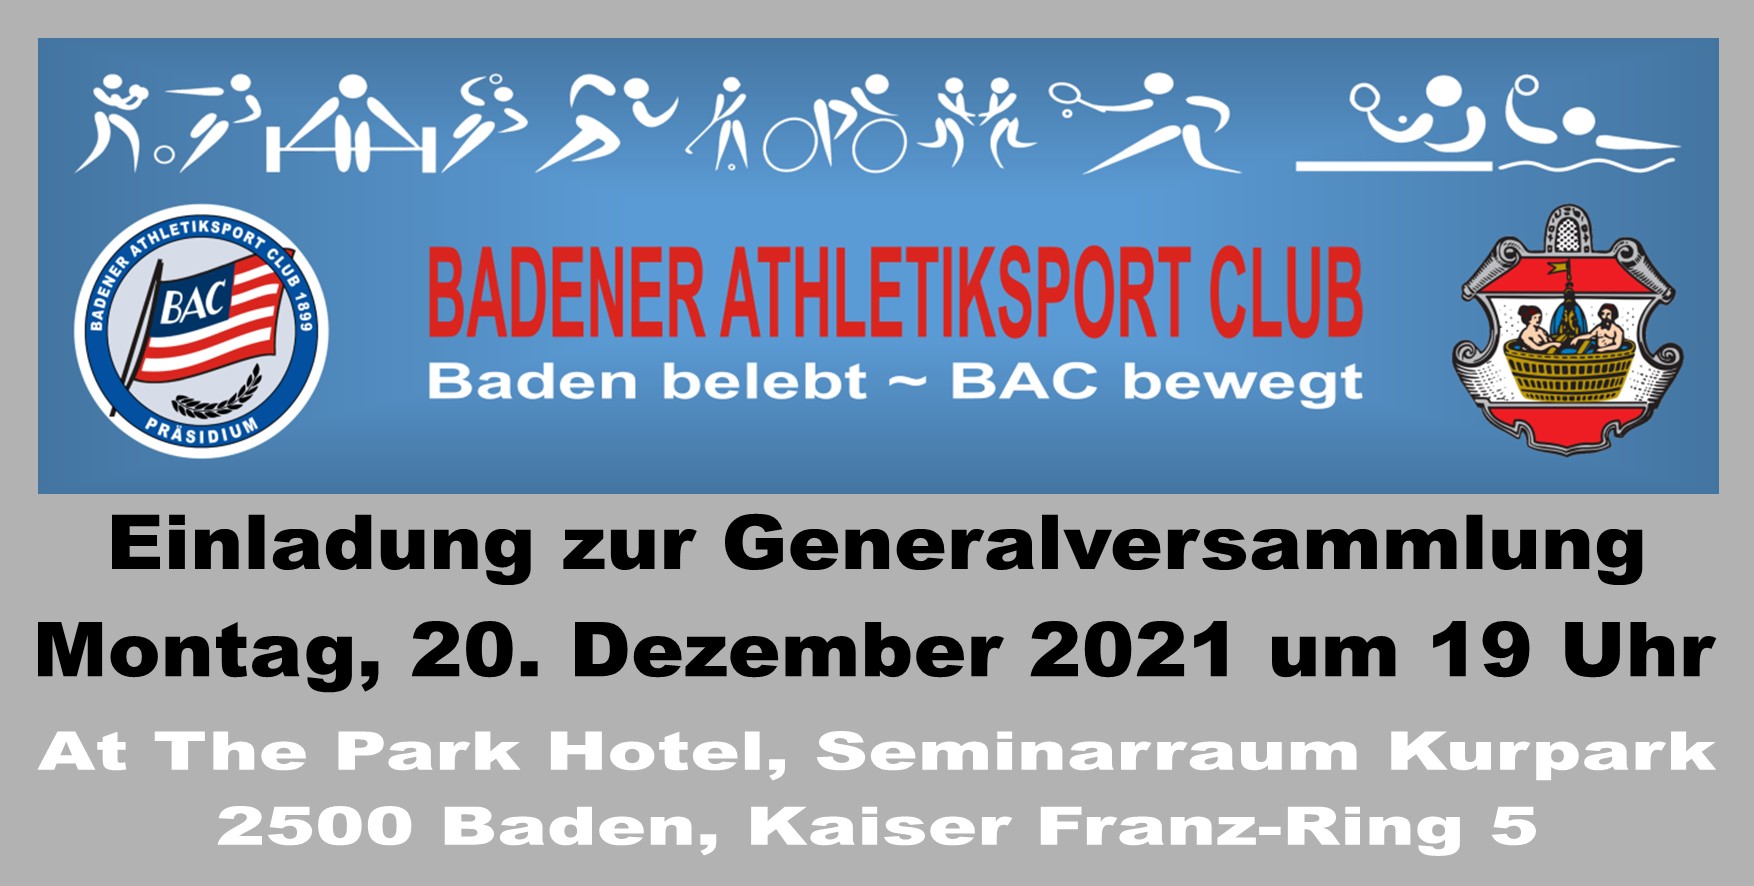 Einladung zur Generalversammlung 2021 - Badener Athletiksport Club